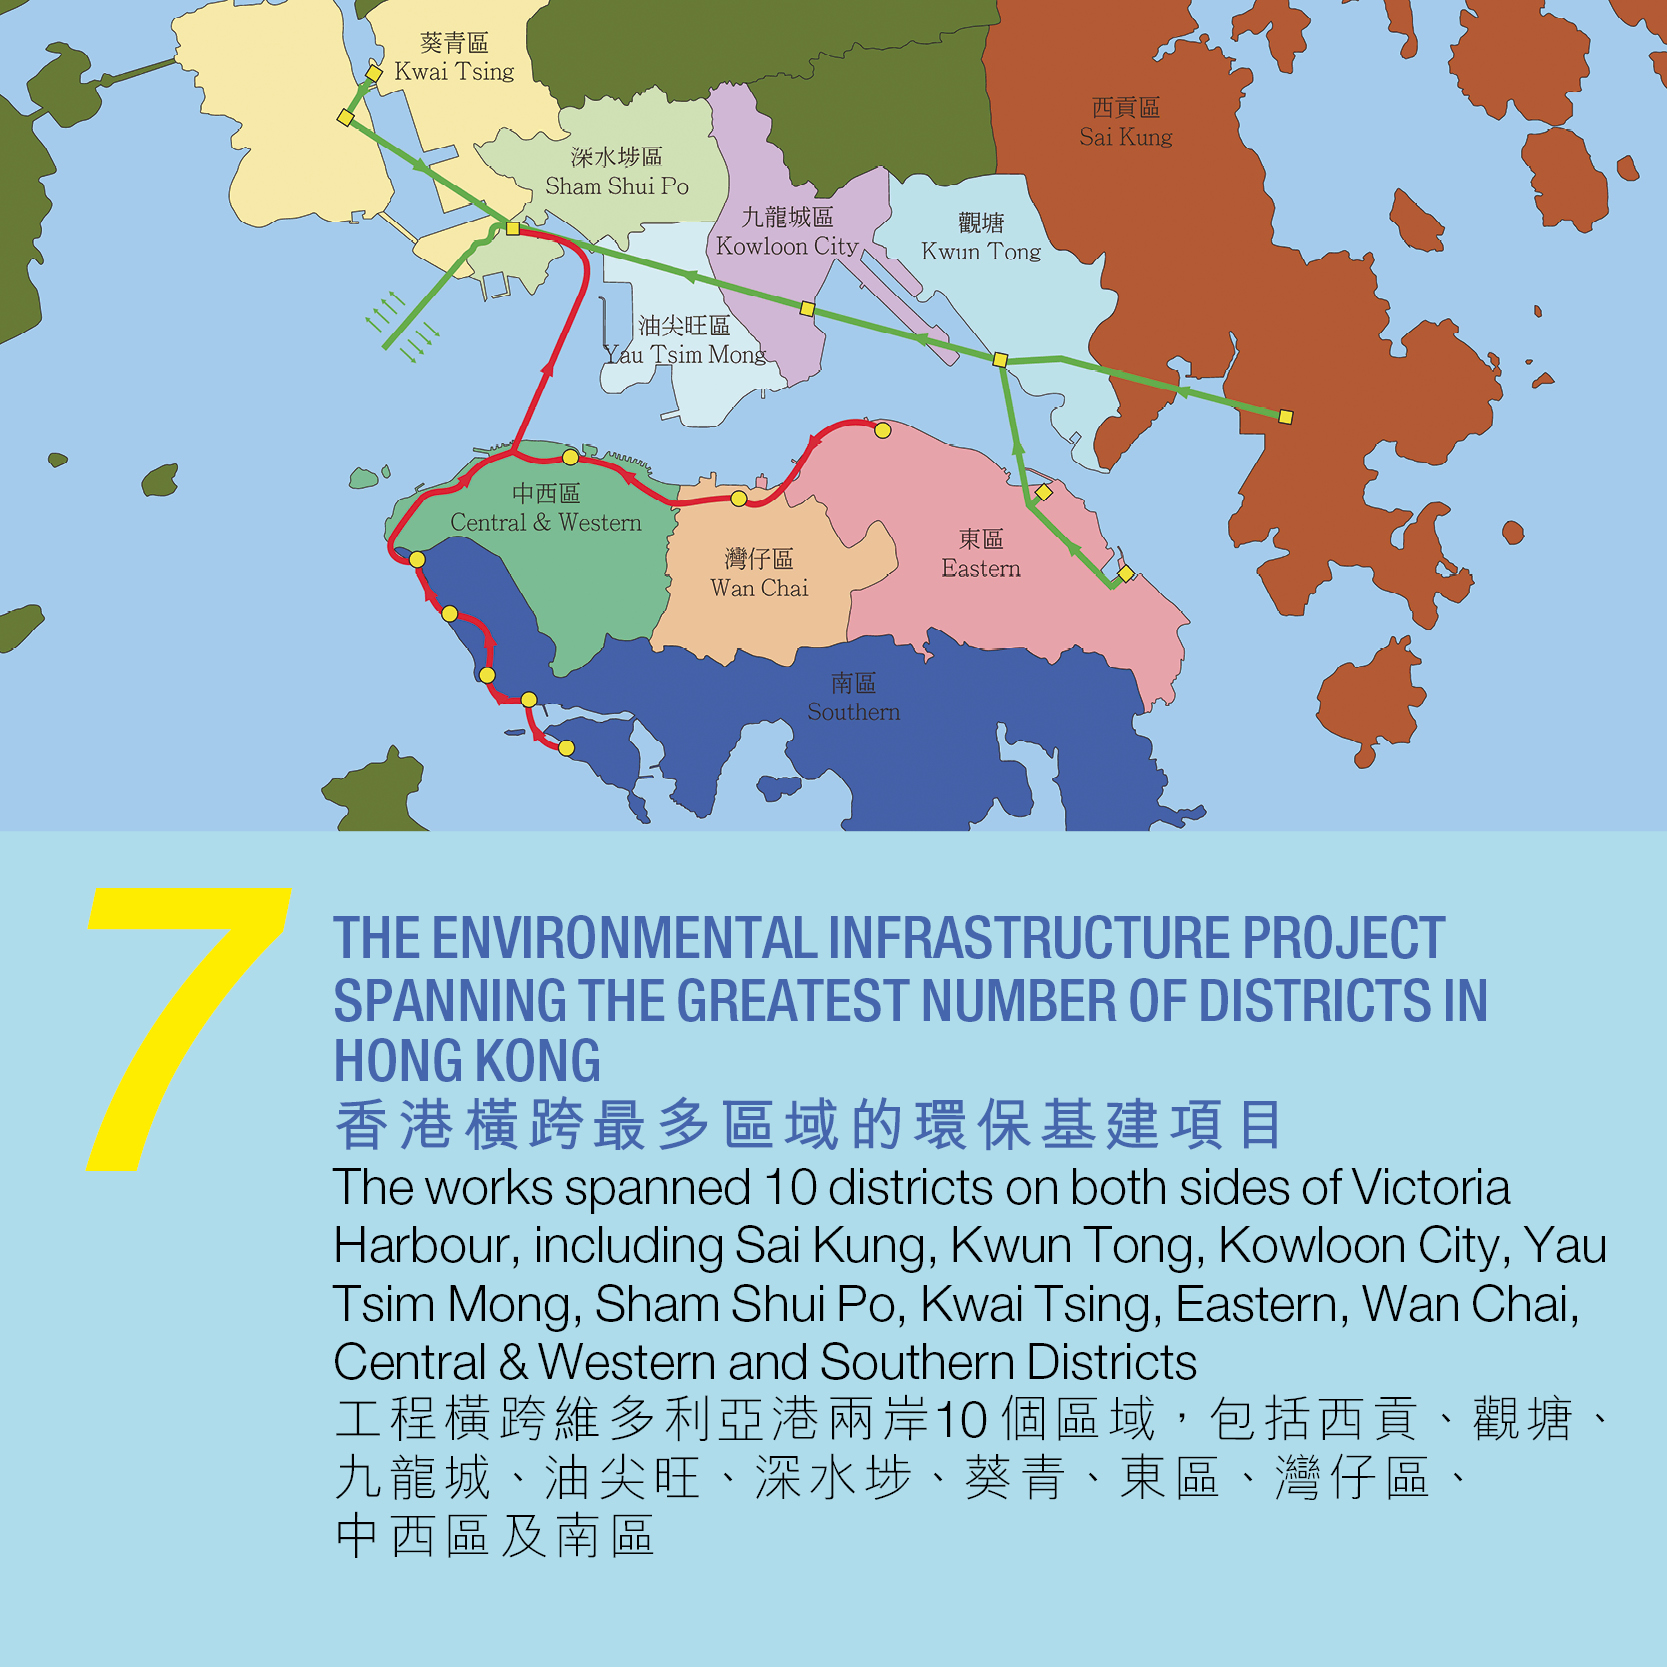 7. 香港橫跨最多區域的環保基建項目 工程橫跨維多利亞港兩岸10 個區域，包括西貢、觀塘、 九龍城、油尖旺、深水埗、葵青、東區、灣仔區、 中西區及南區